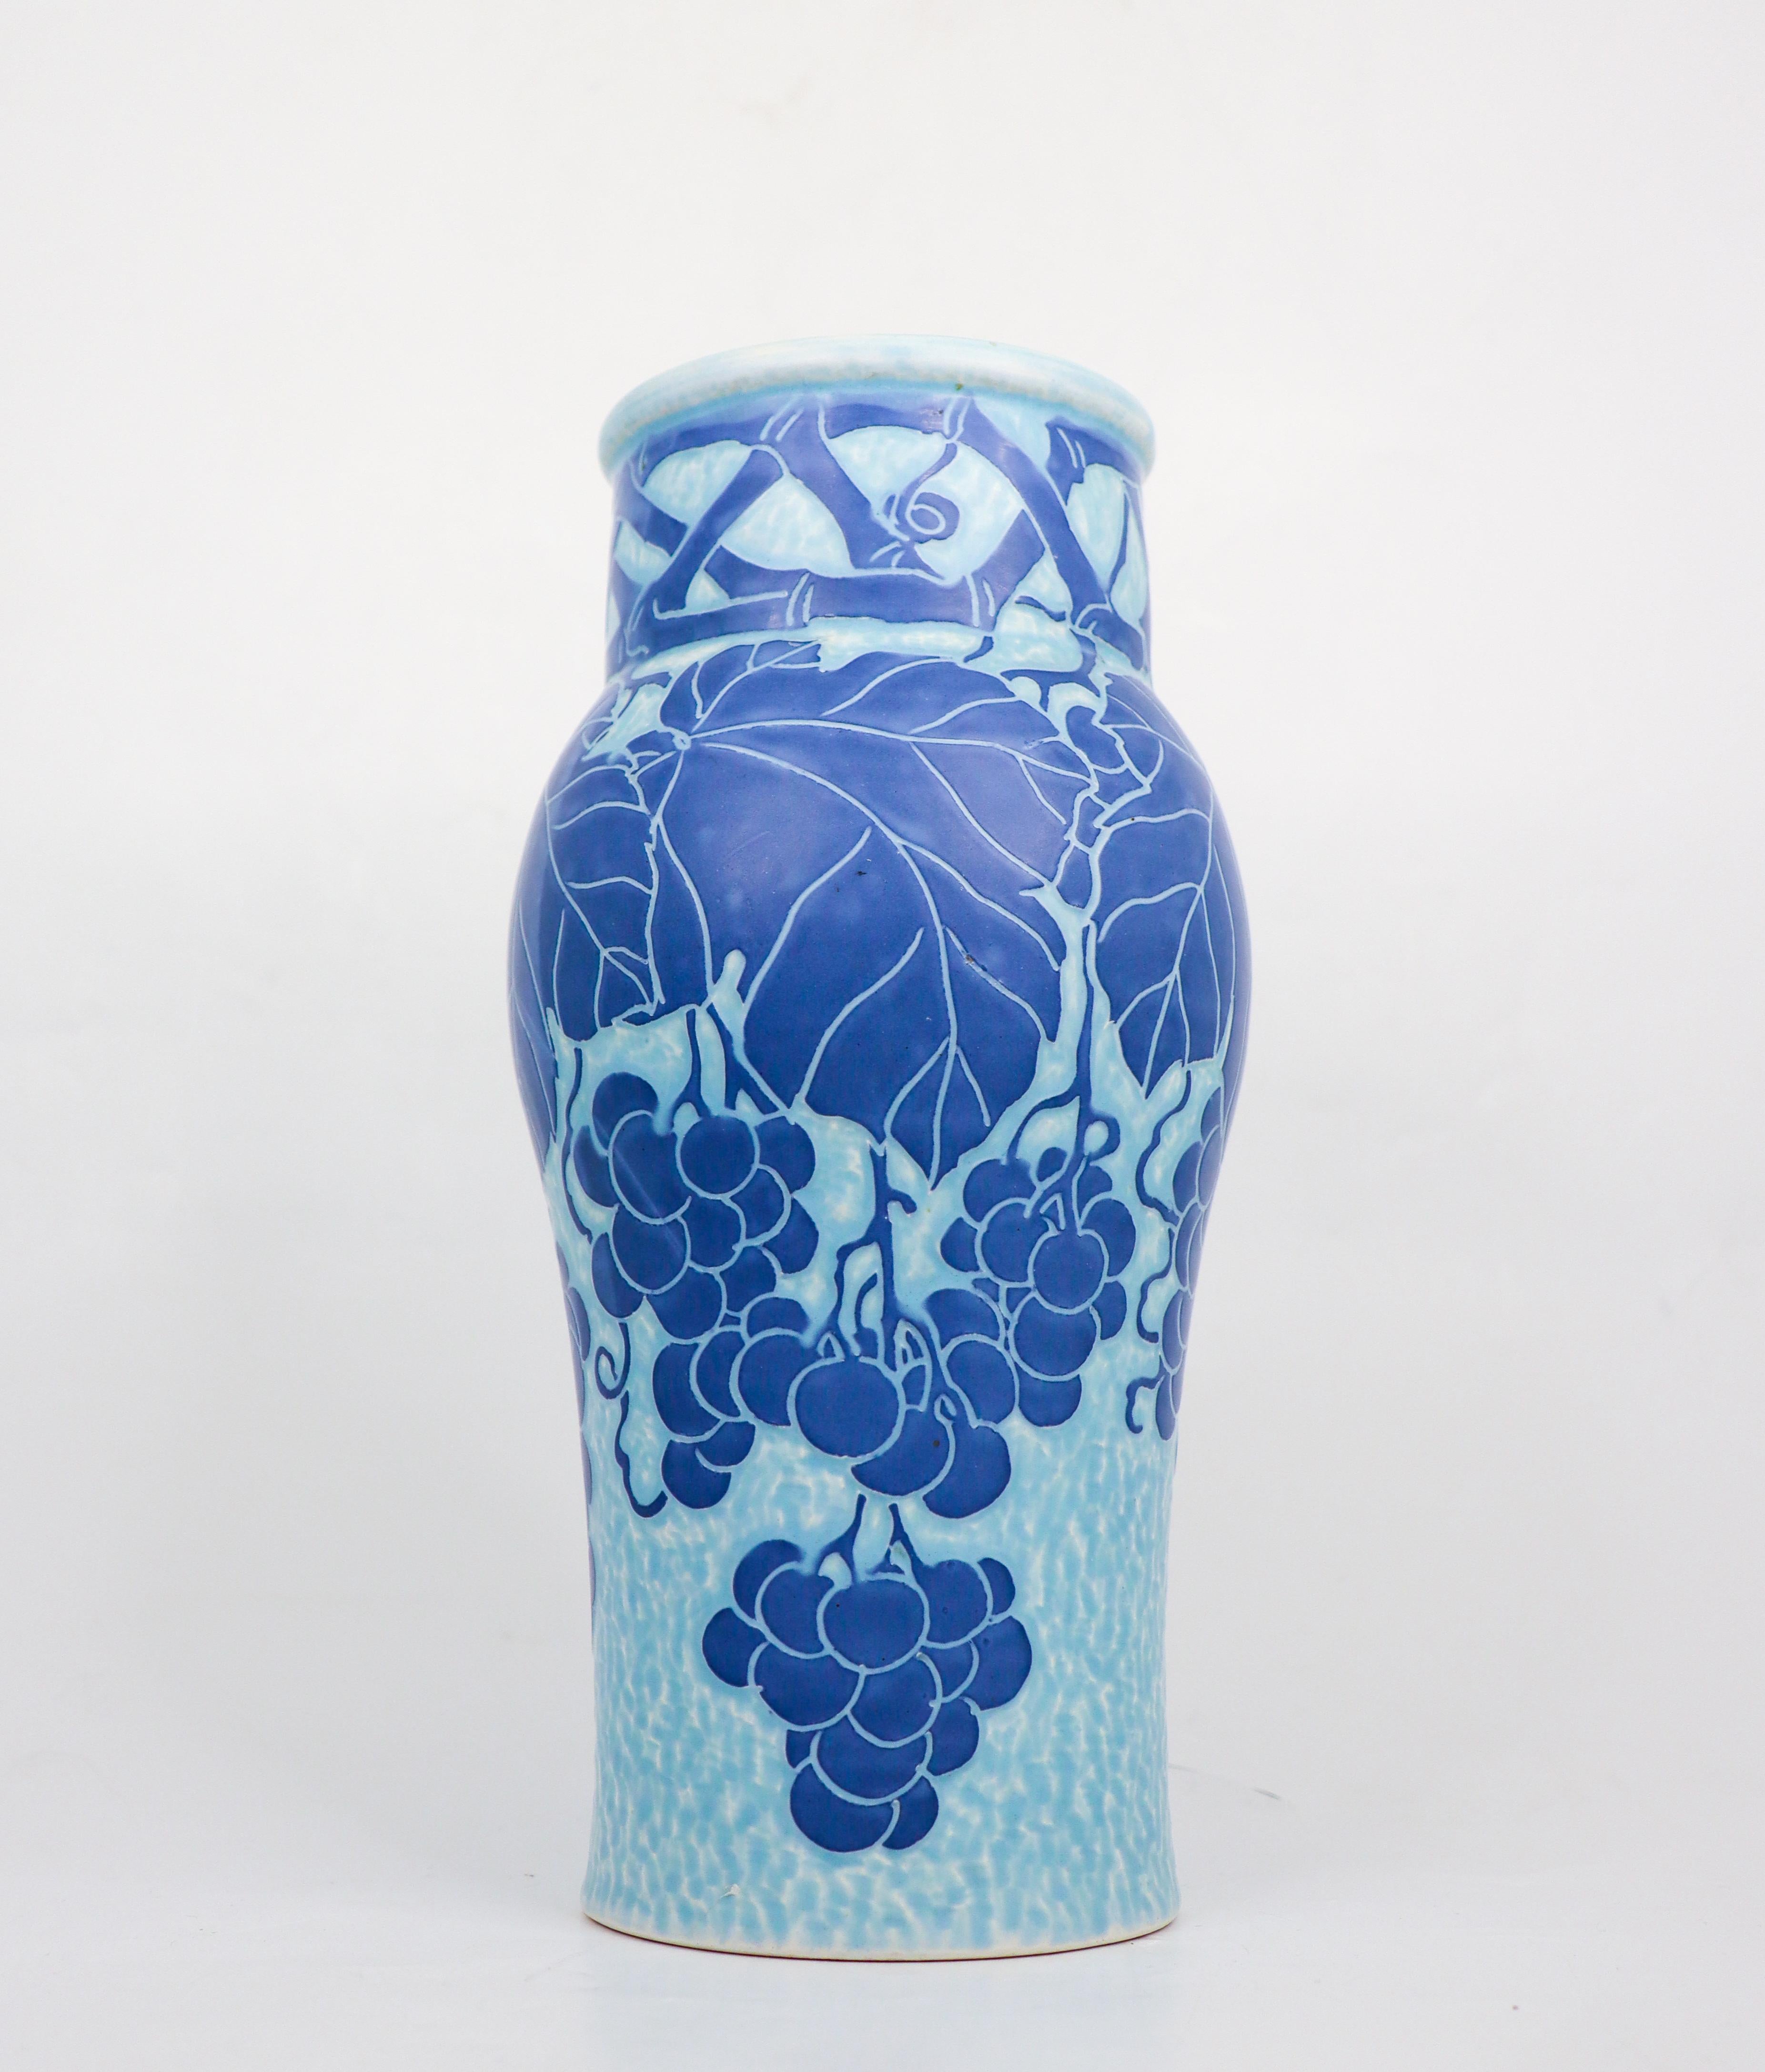 Diese Jugendstilvase aus Keramik wurde 1915 von Josef Ekberg bei Gustavsberg entworfen und stammt aus der klassischen Sgrafitto-Serie. Die Vase ist 28 cm (11,2